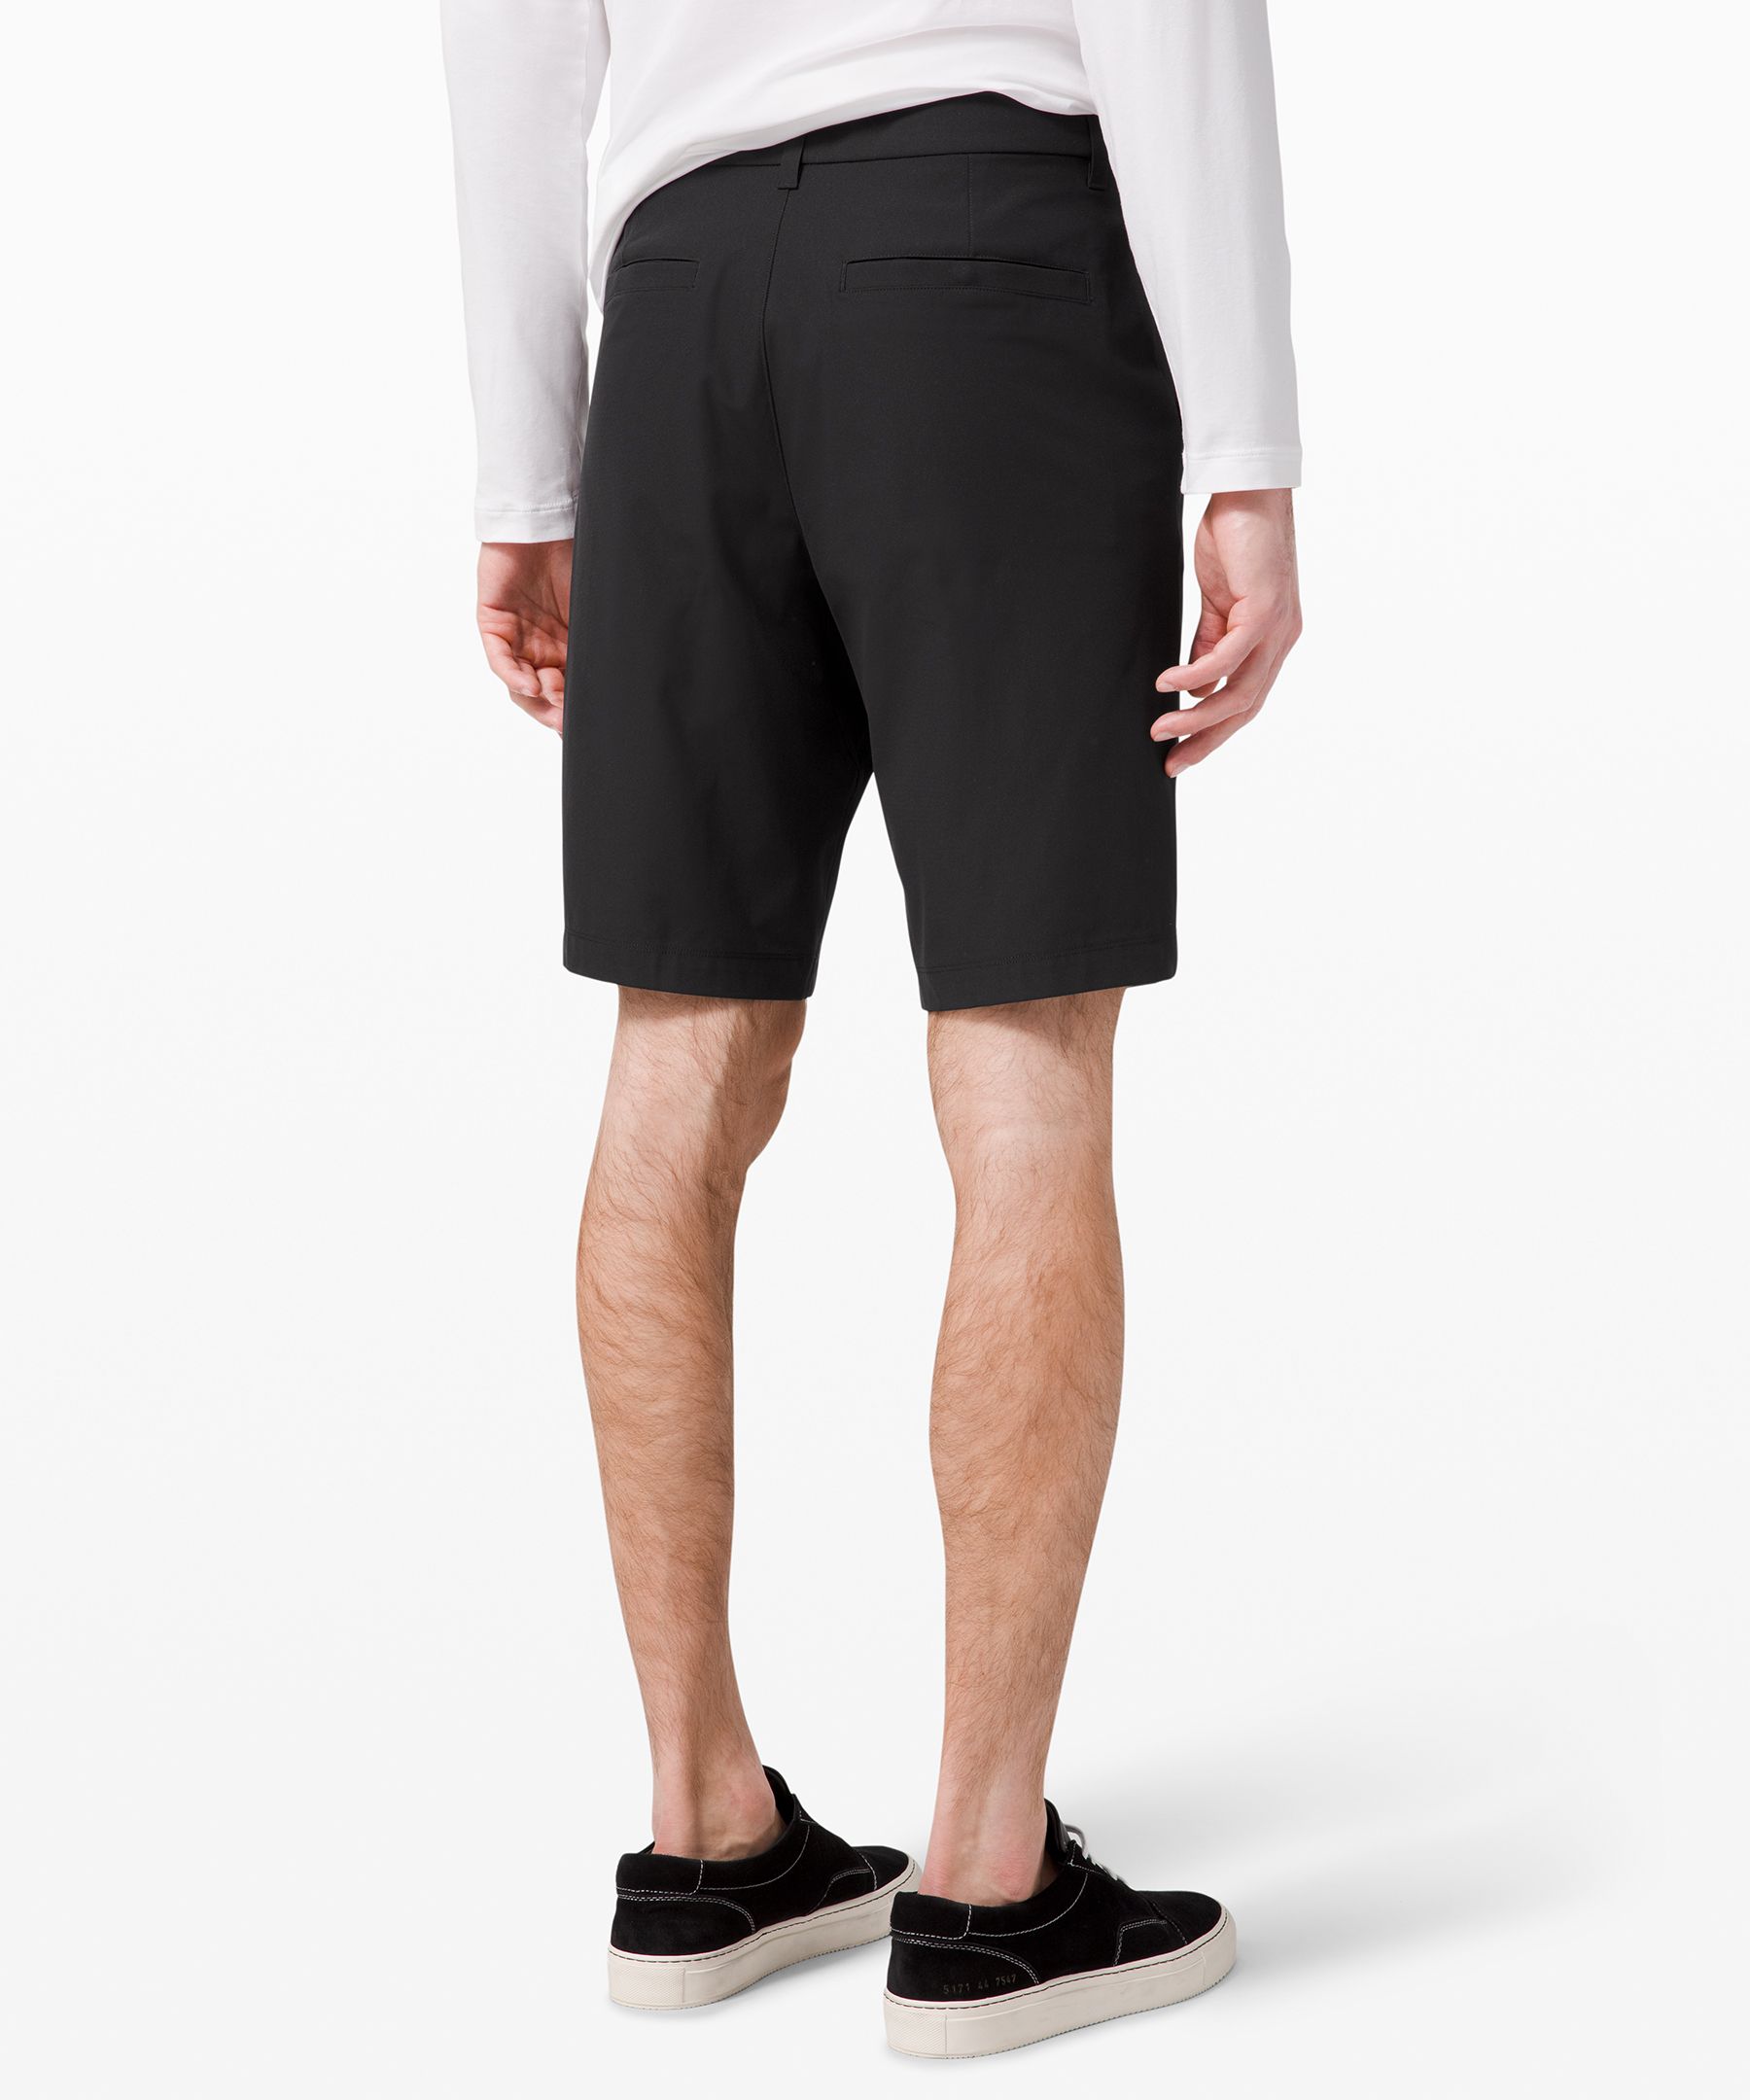 lululemon 11 inch shorts